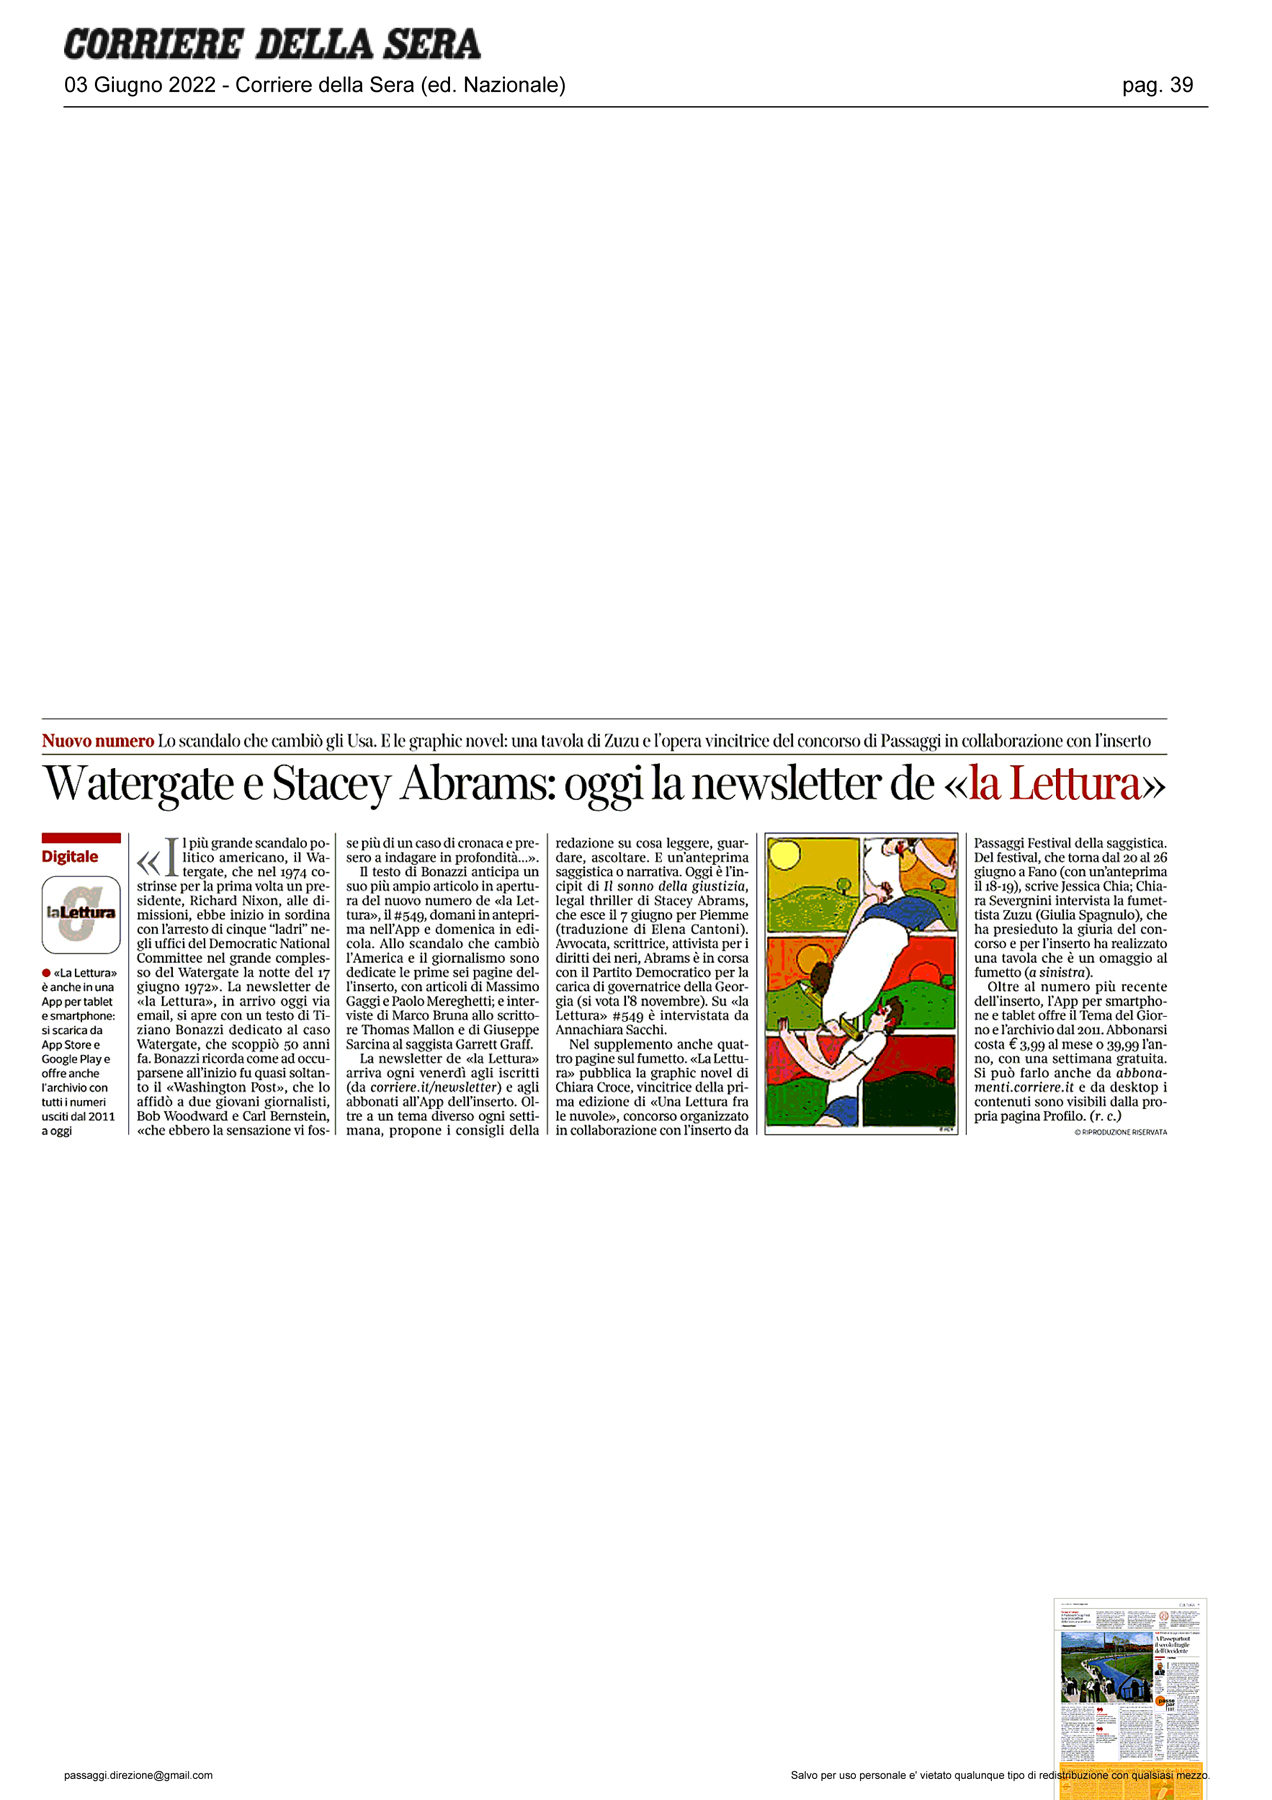 Corriere_della_Sera_watergate-e-stacey-abrams-oggi-la-newsletter.